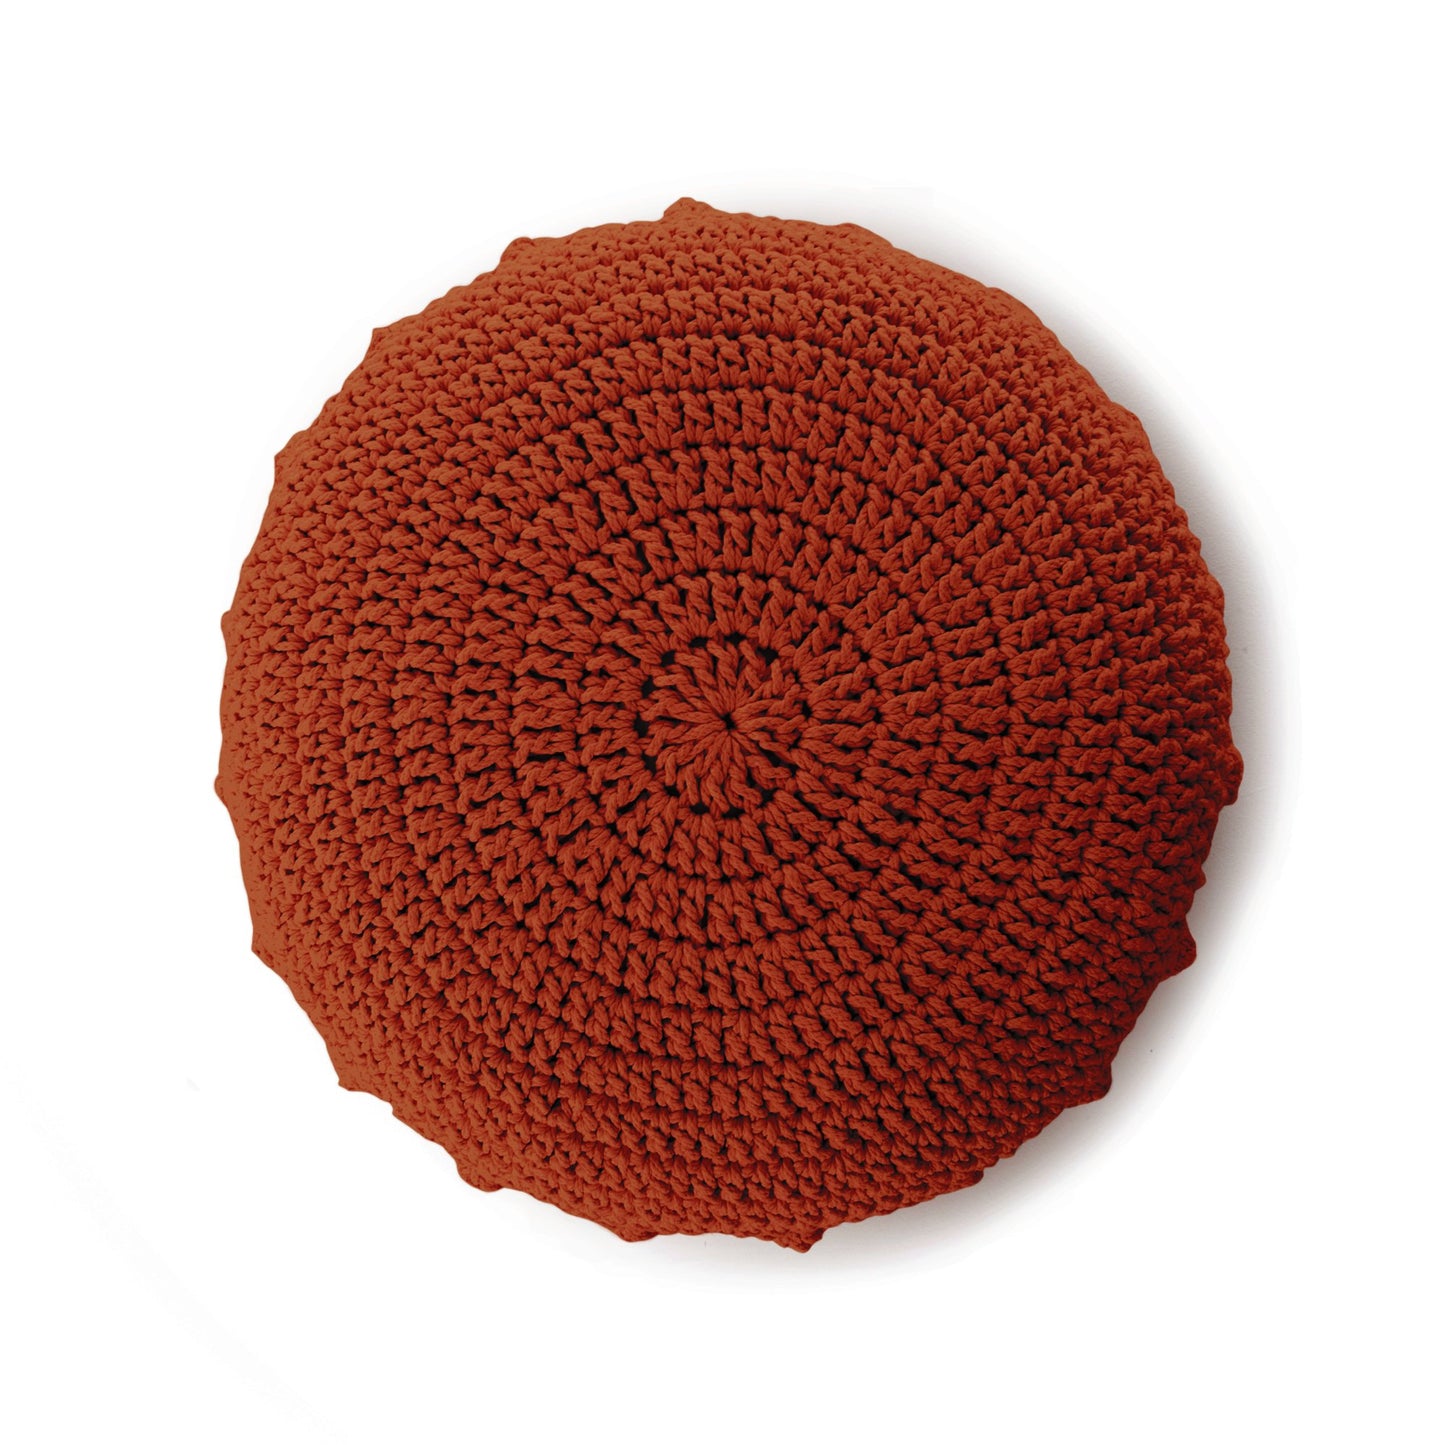 Puff Disco em crochê Terracota, com fio 100% algodão.  Fechamento com zíper, possibilitando a remoção da capa para lavagem.  Dimensões: Altura - 20cm; Diâmetro - 85cm. 